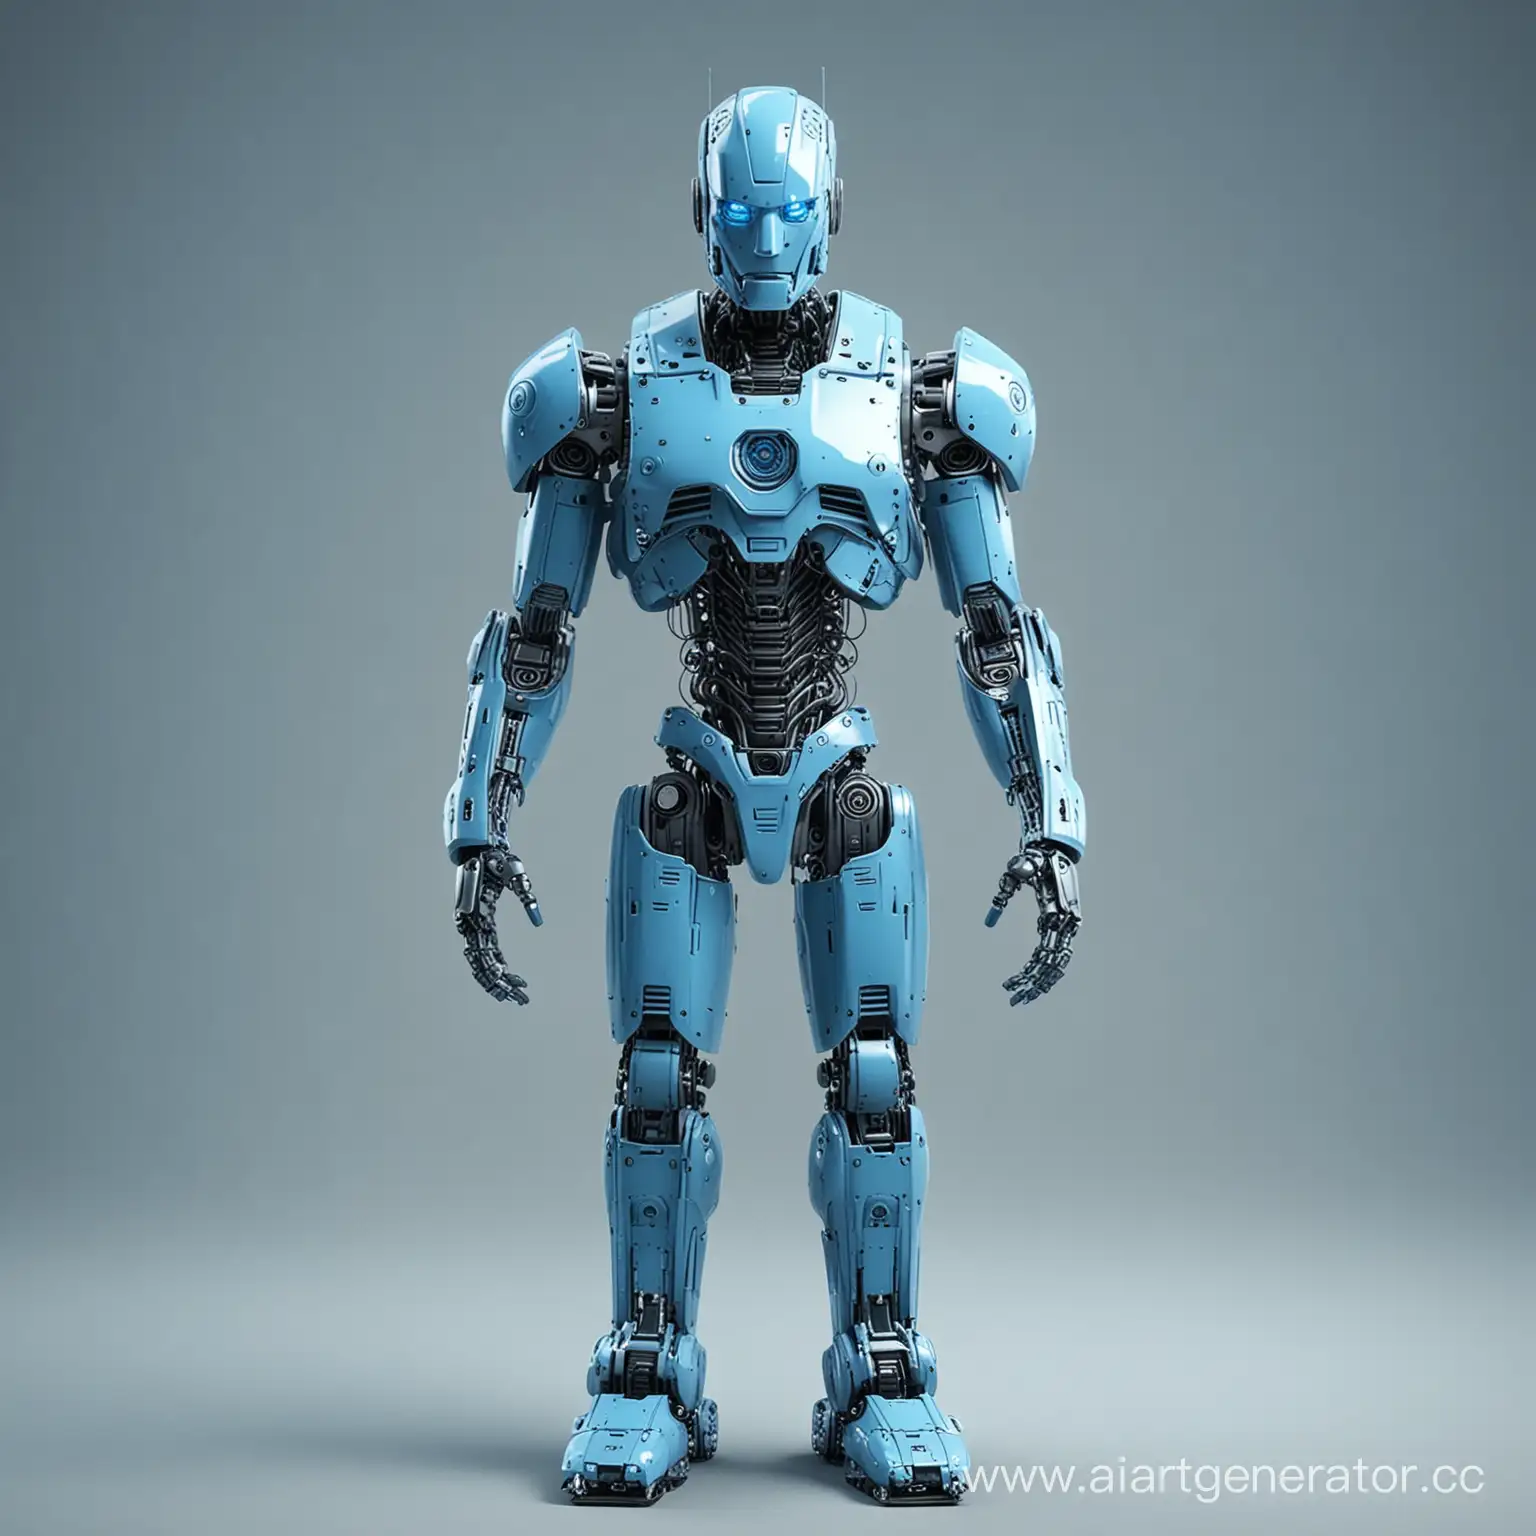 BlueToned-Robot-Futuristic-Machine-in-Cool-Blue-Hues